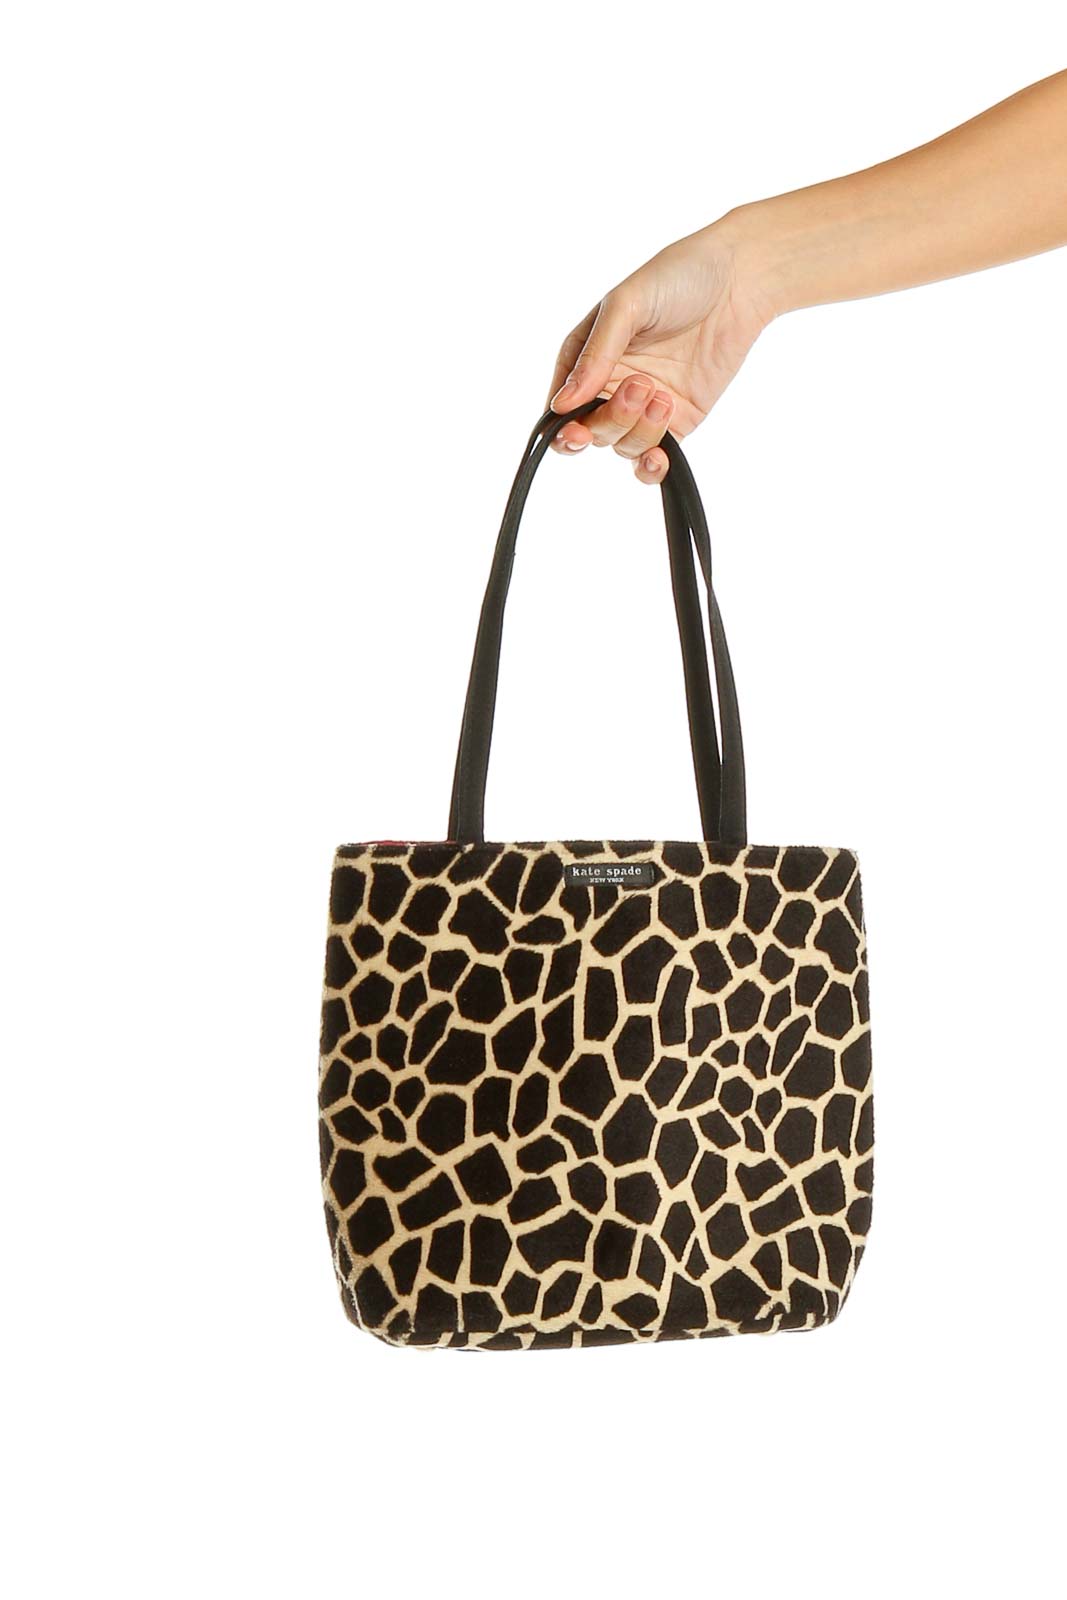 Kate Spade New York: Beige Brown Animal Print Shoulder Bag | Silkroll